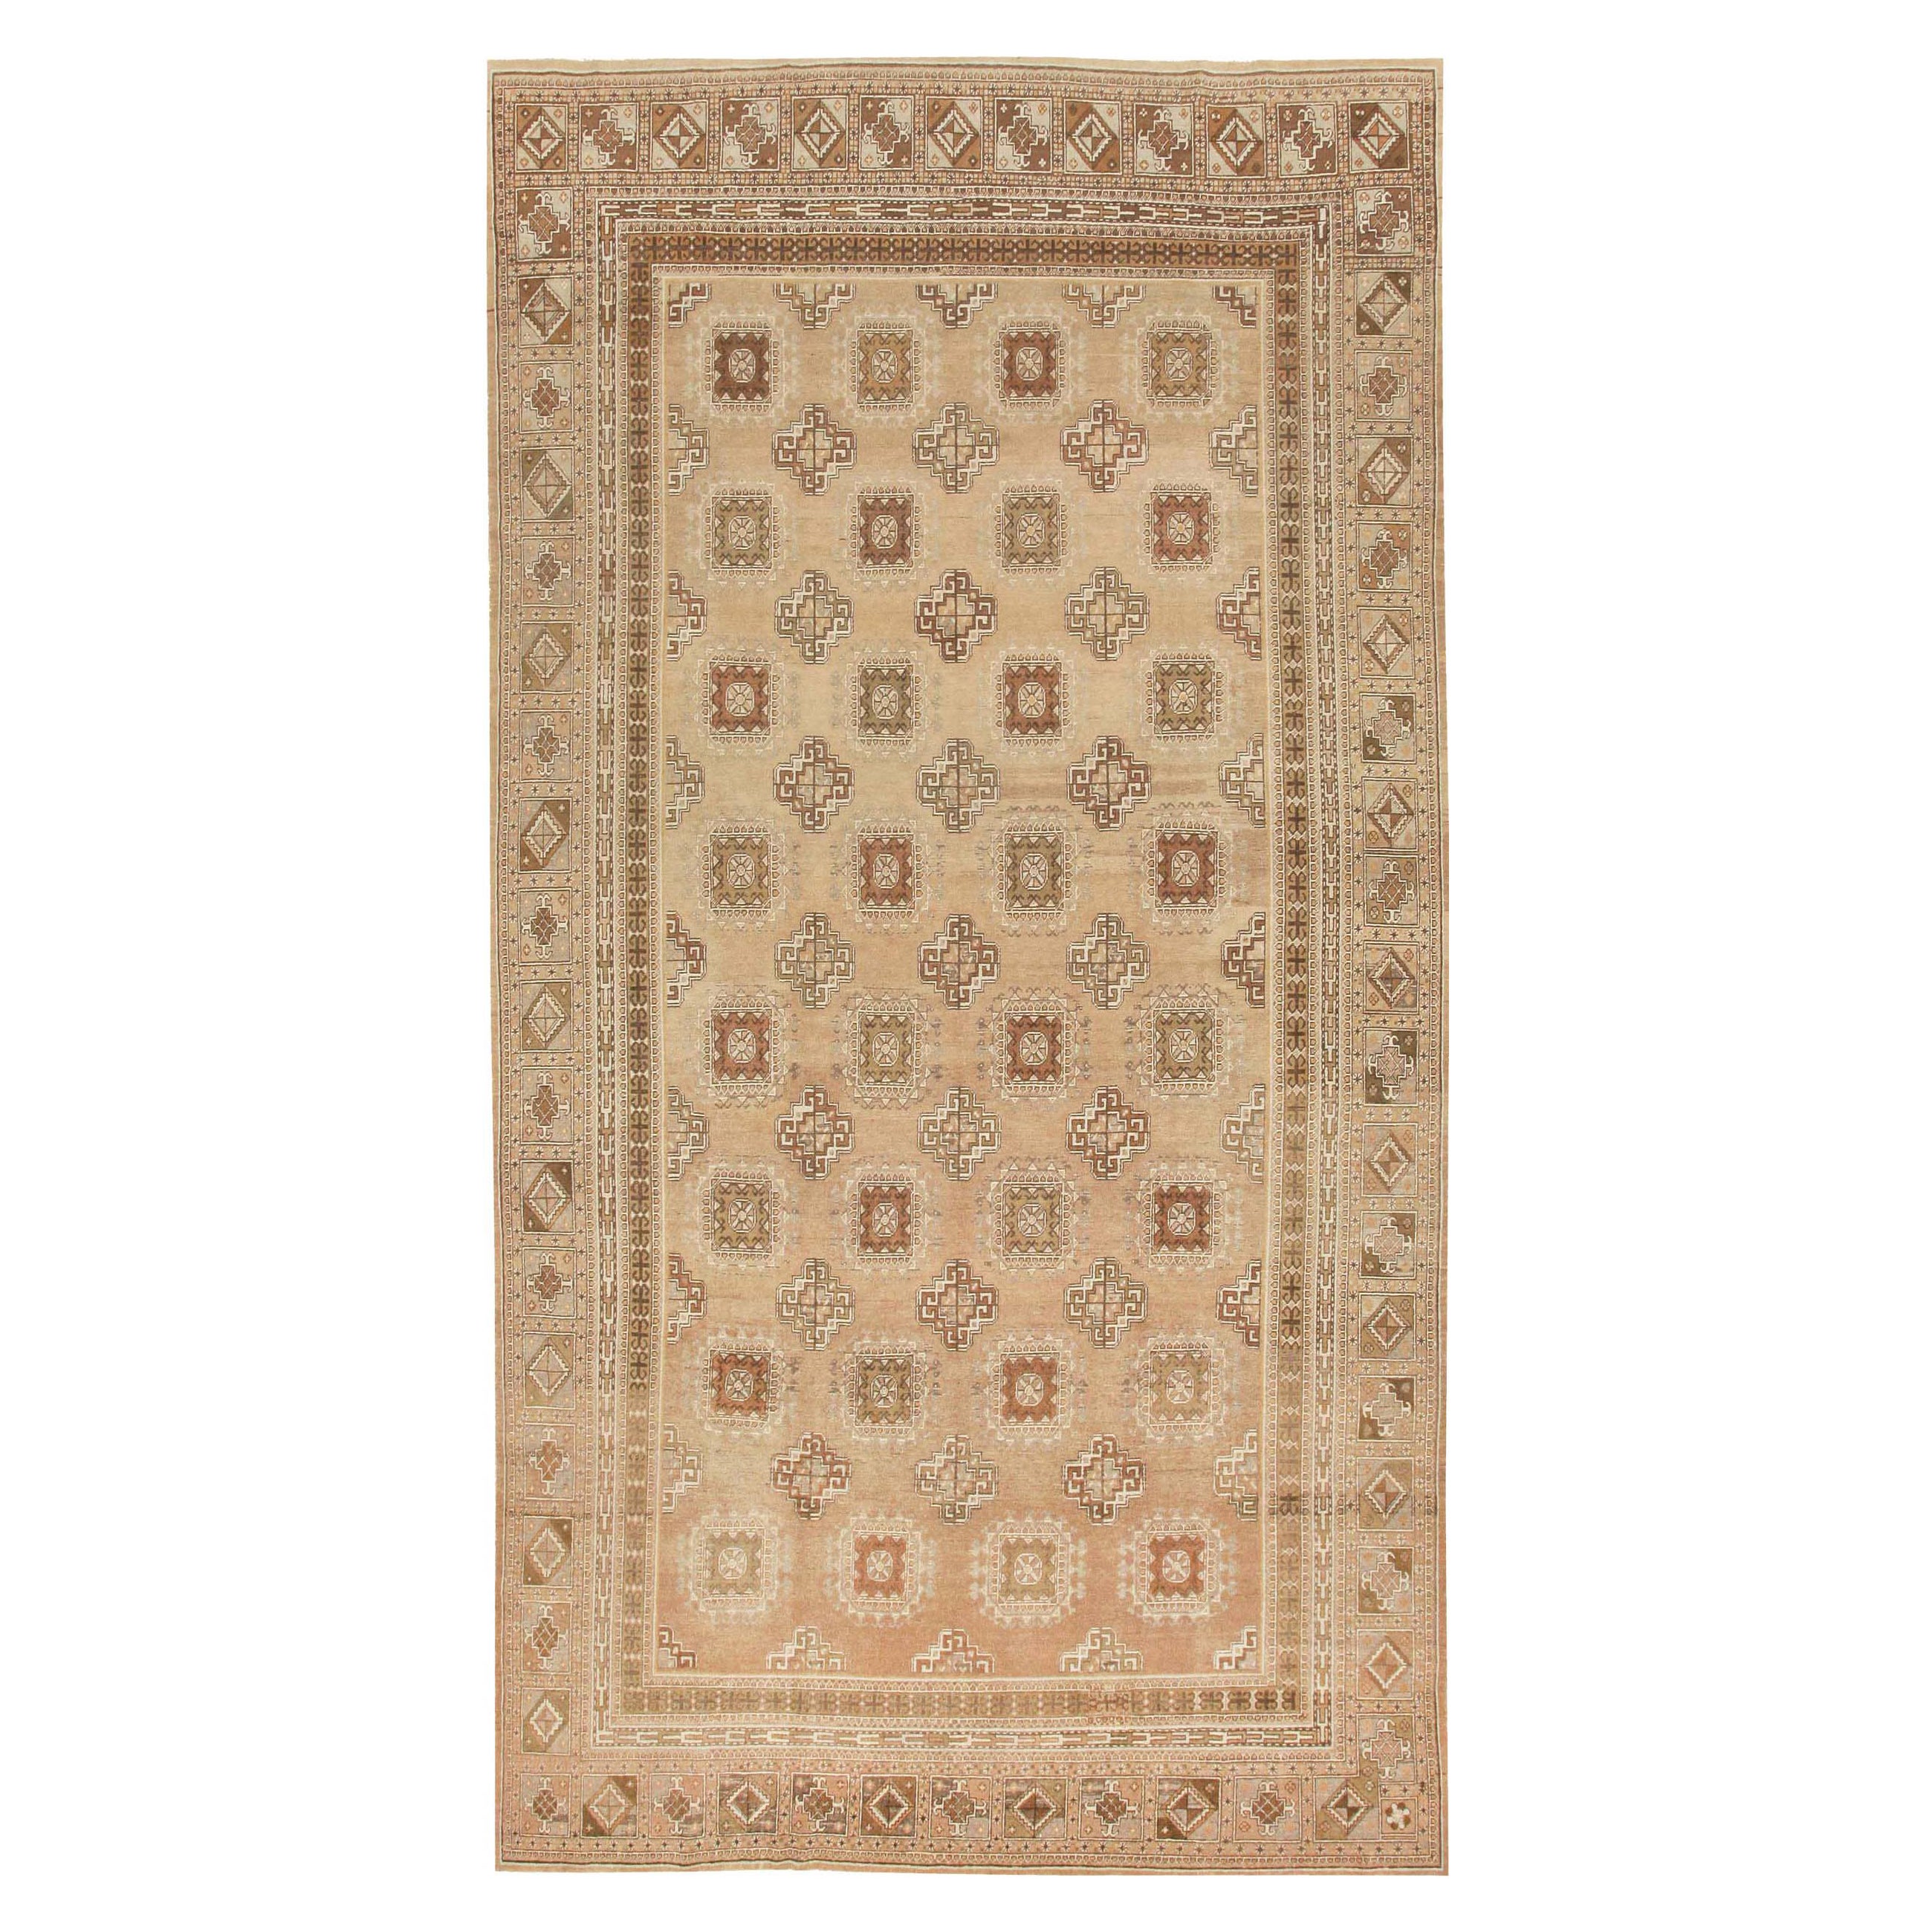 Antiker Khotan-Teppich. Größe: 9 Fuß x 17 Fuß 2 Zoll